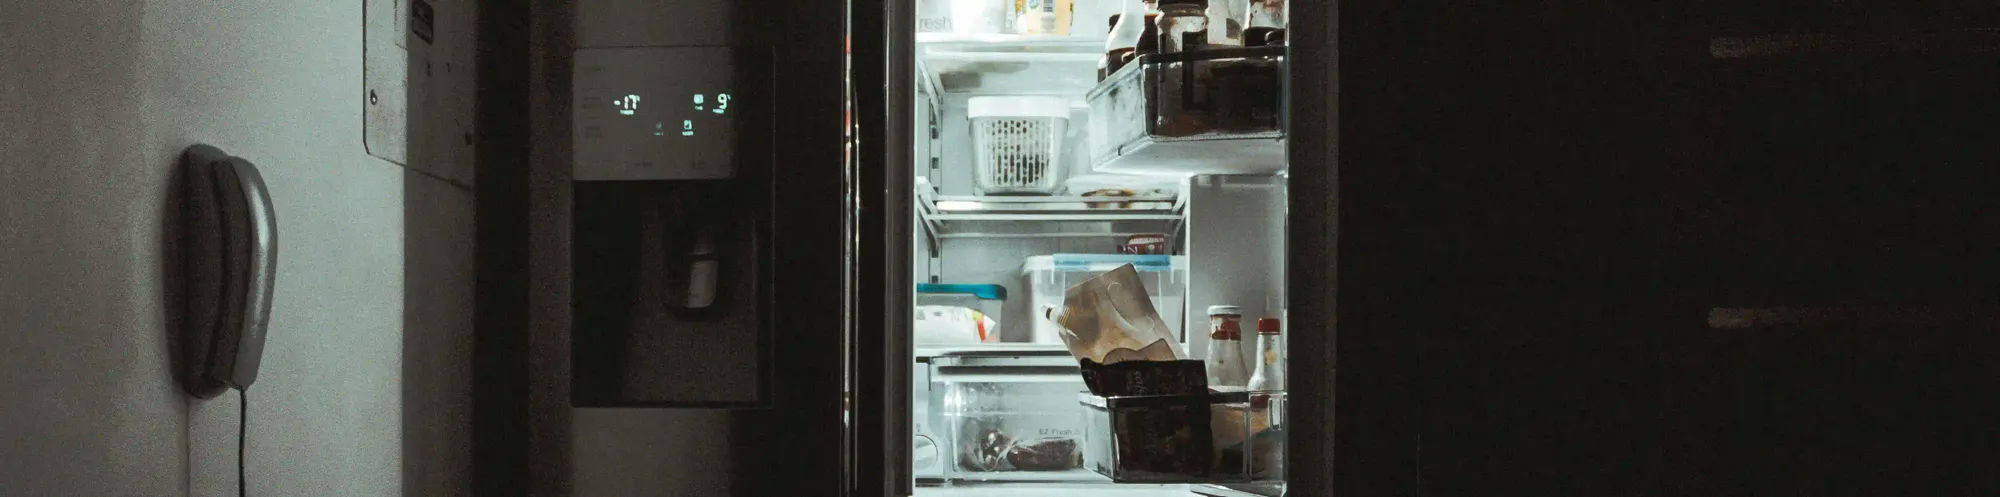 5 funções da geladeira smart que talvez você ainda não conheça